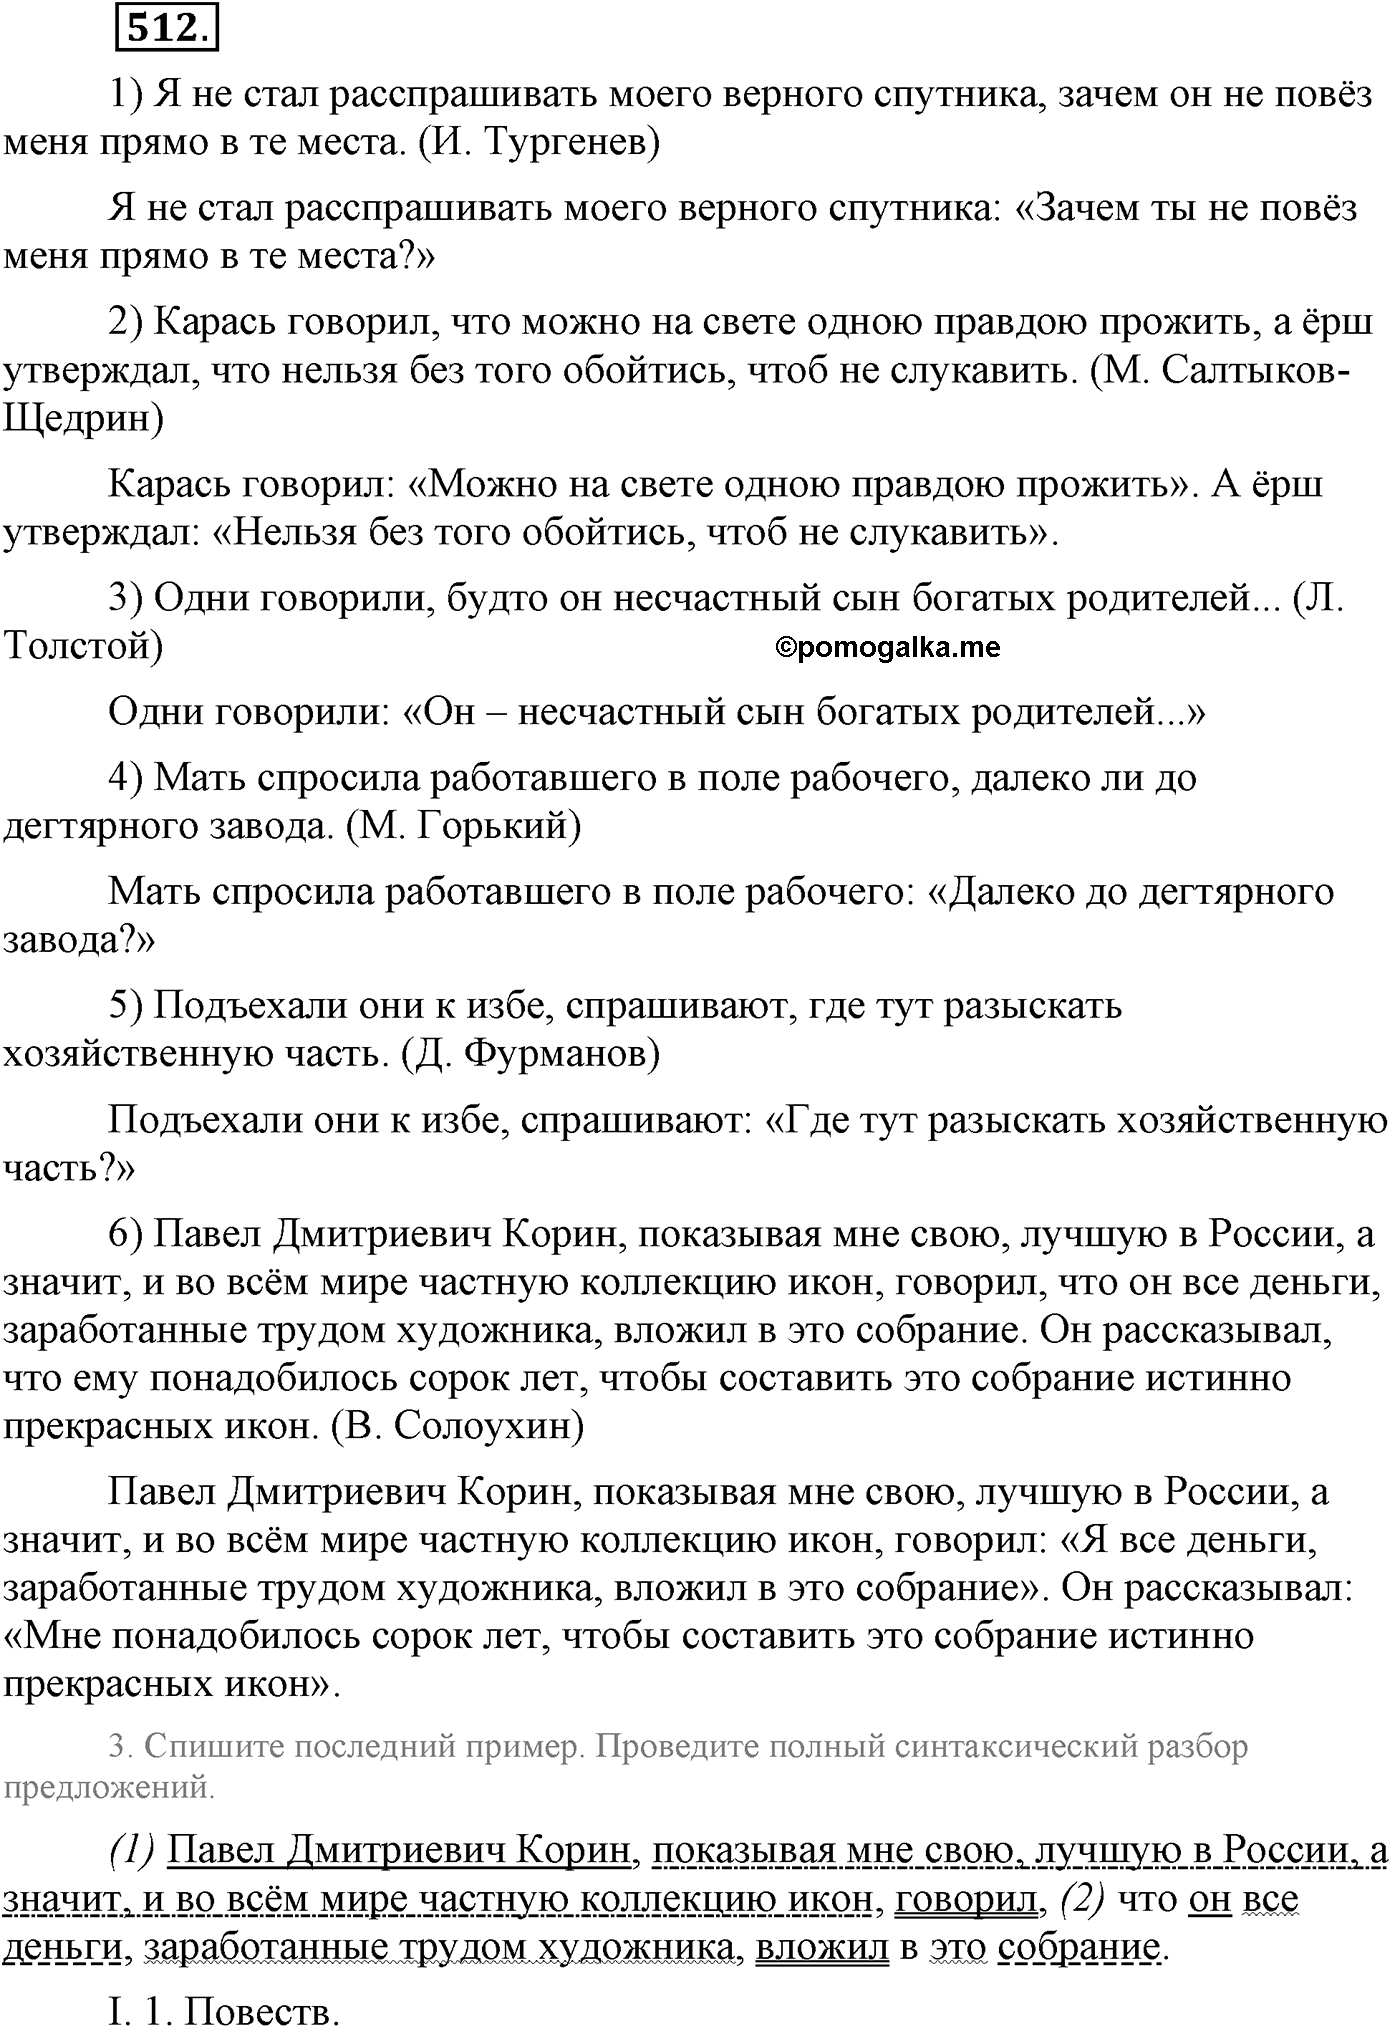 упражнение №512 русский язык 9 класс Львова